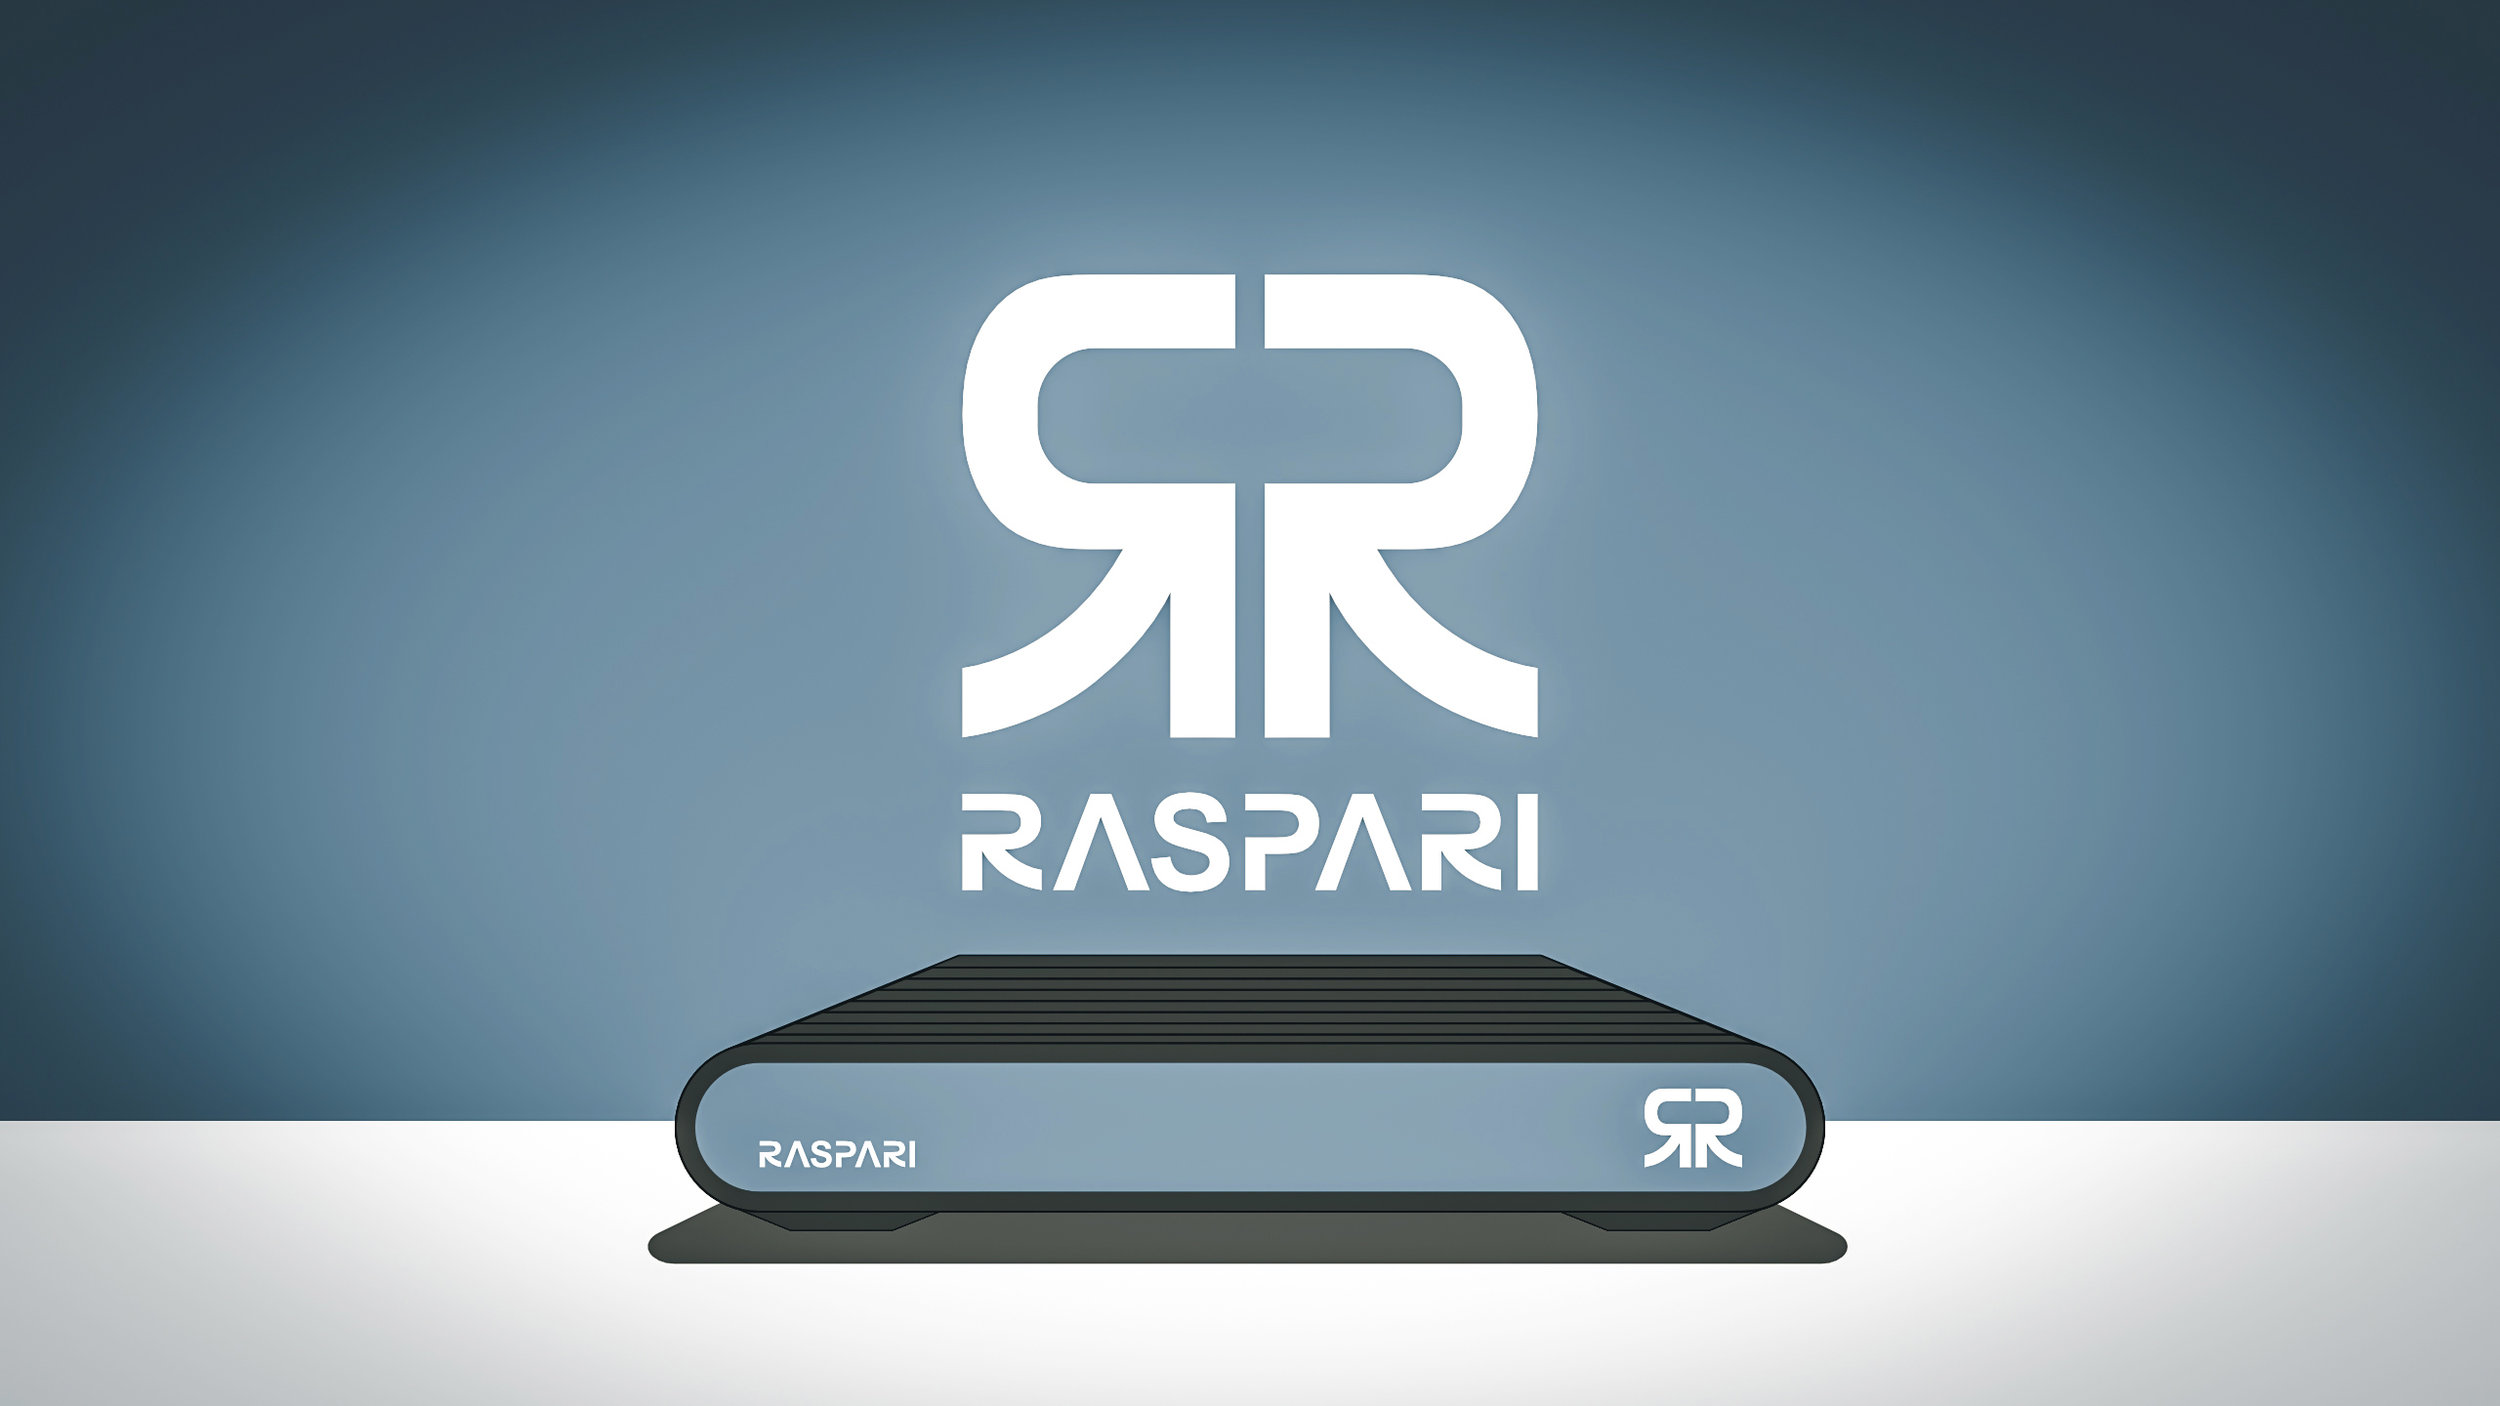 Raspari_Splashscreen.jpg